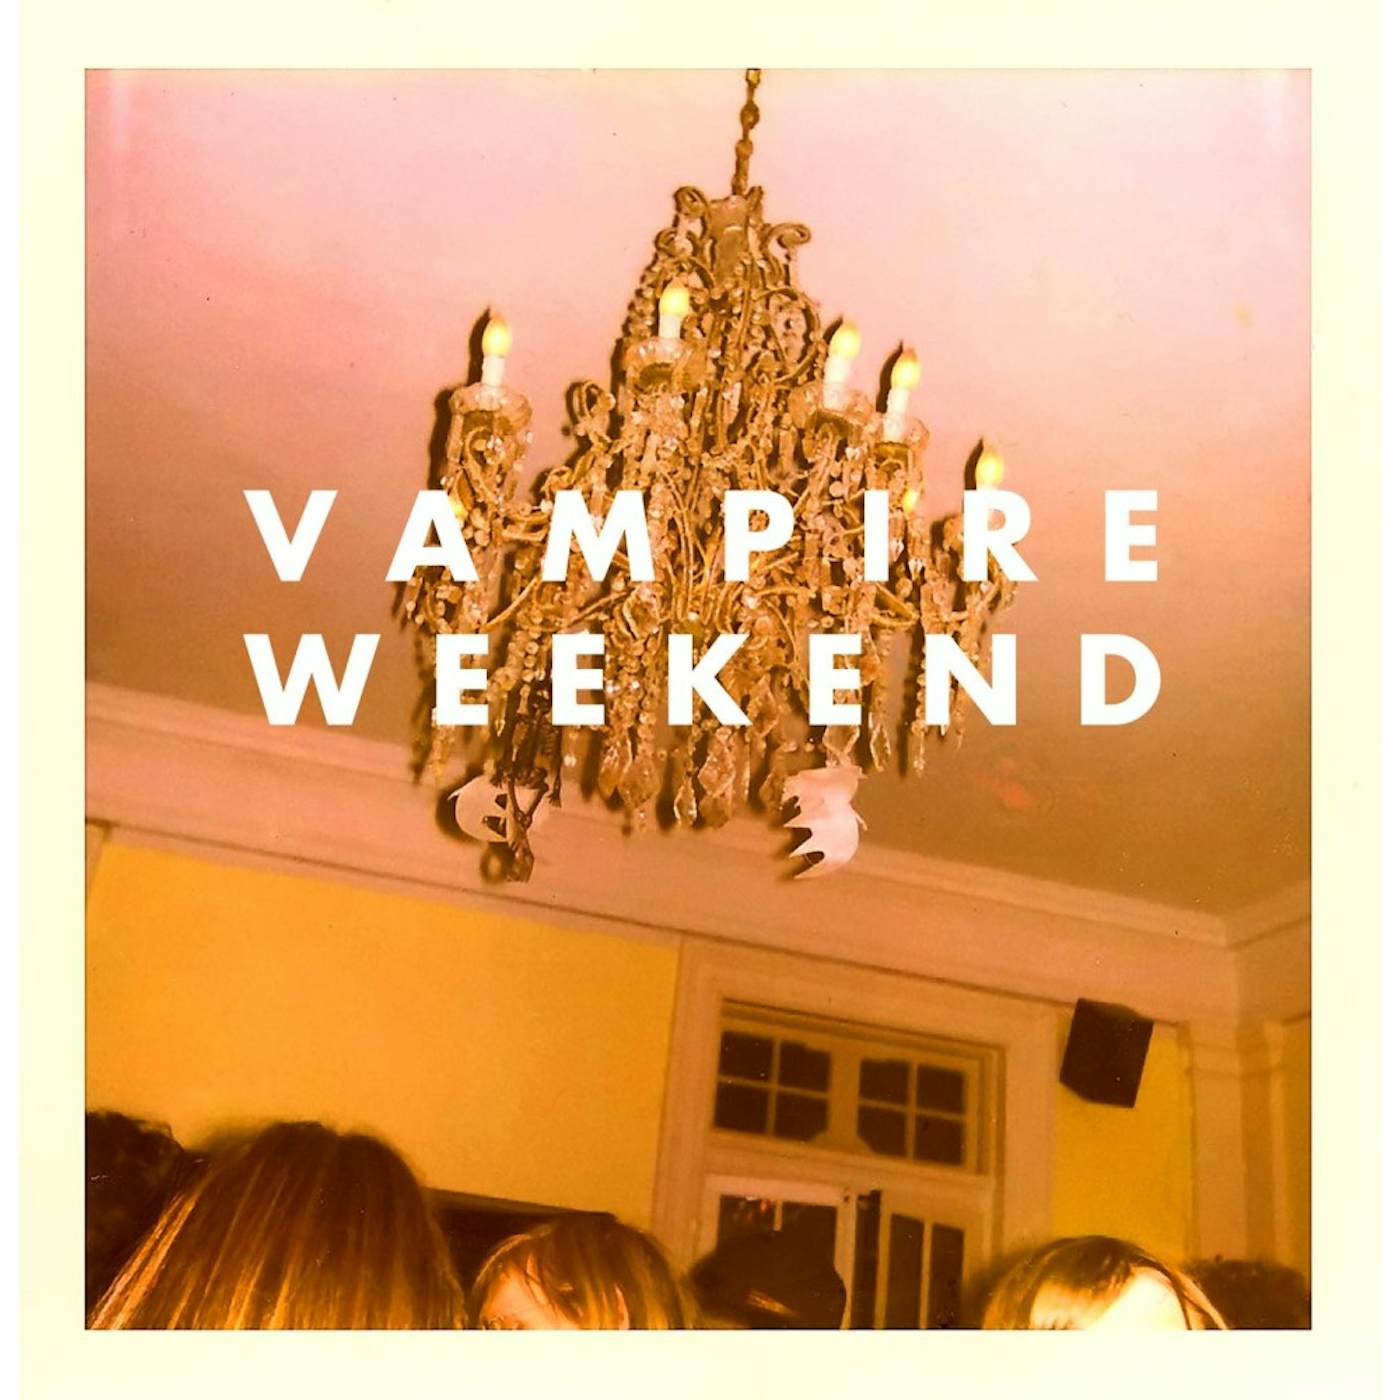  Vampire Weekend Vinyl Record